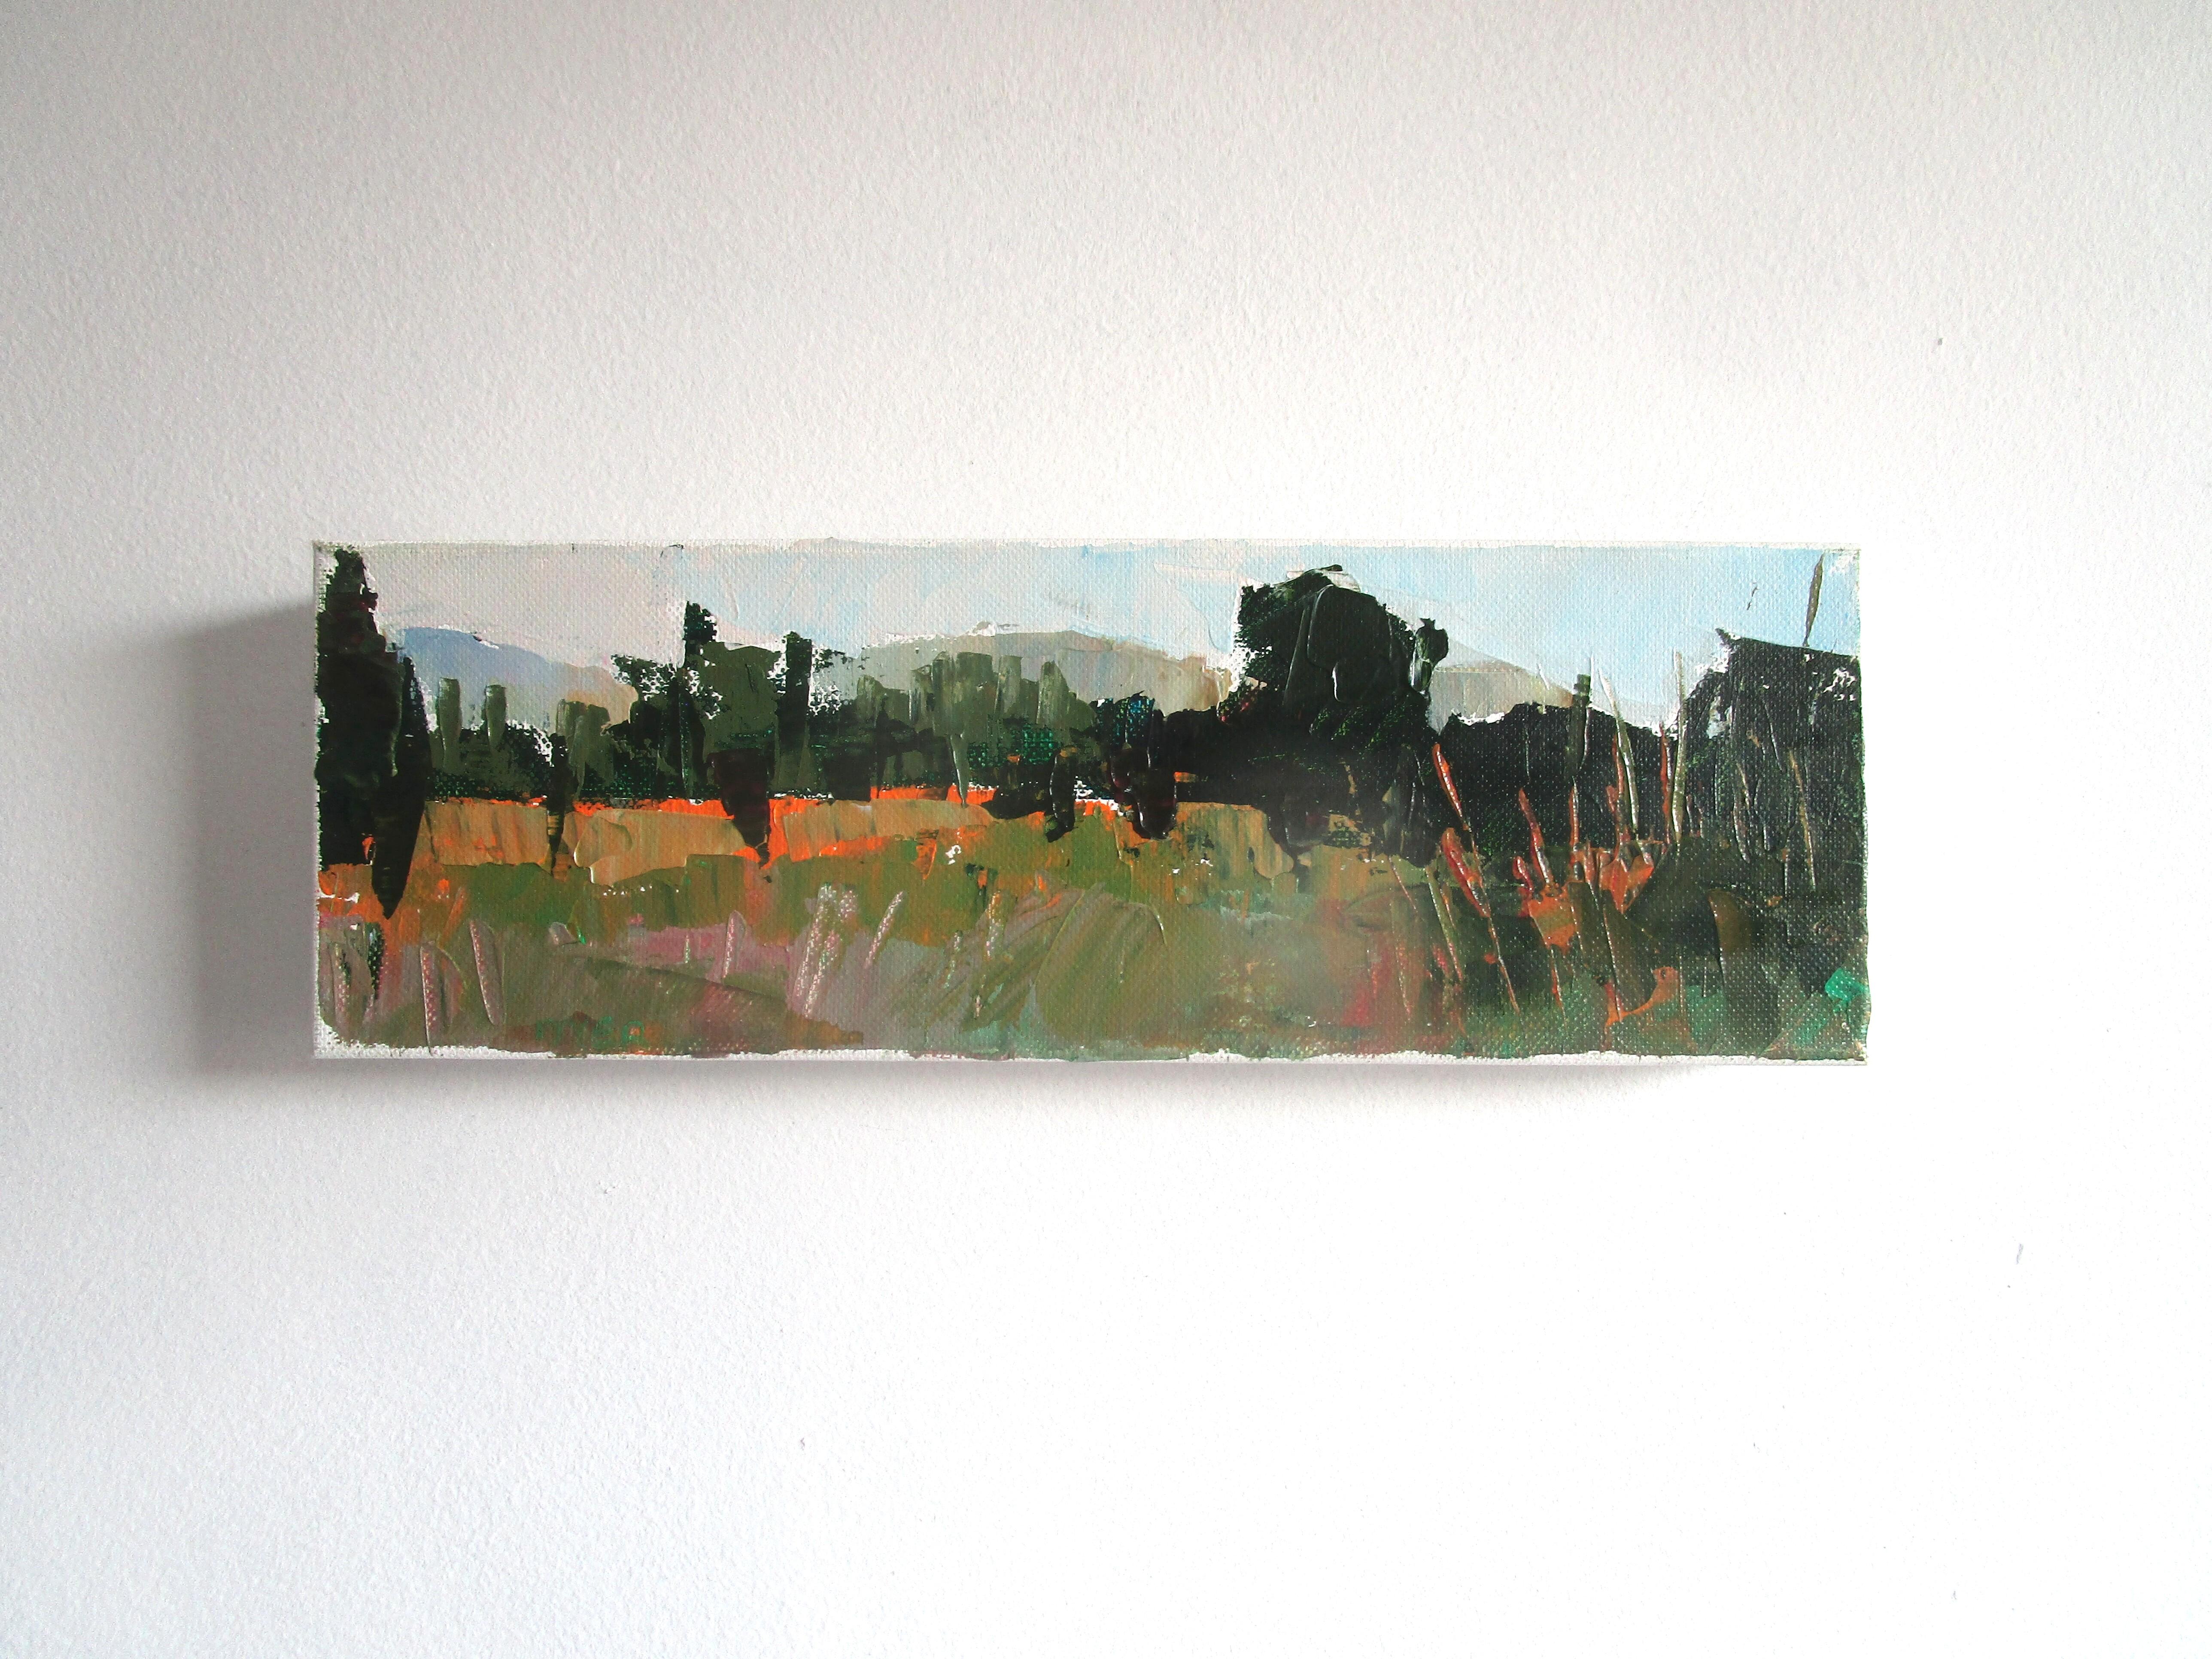 <p>Kommentare des Künstlers<br />Die Künstlerin Janet Dyer zeigt eine grüne Landschaft in der Provence in der Nähe des Hauses ihres guten Freundes. In der Ferne türmen sich die Berge auf und bieten einen beeindruckenden Panoramablick. Ihr abstrakter